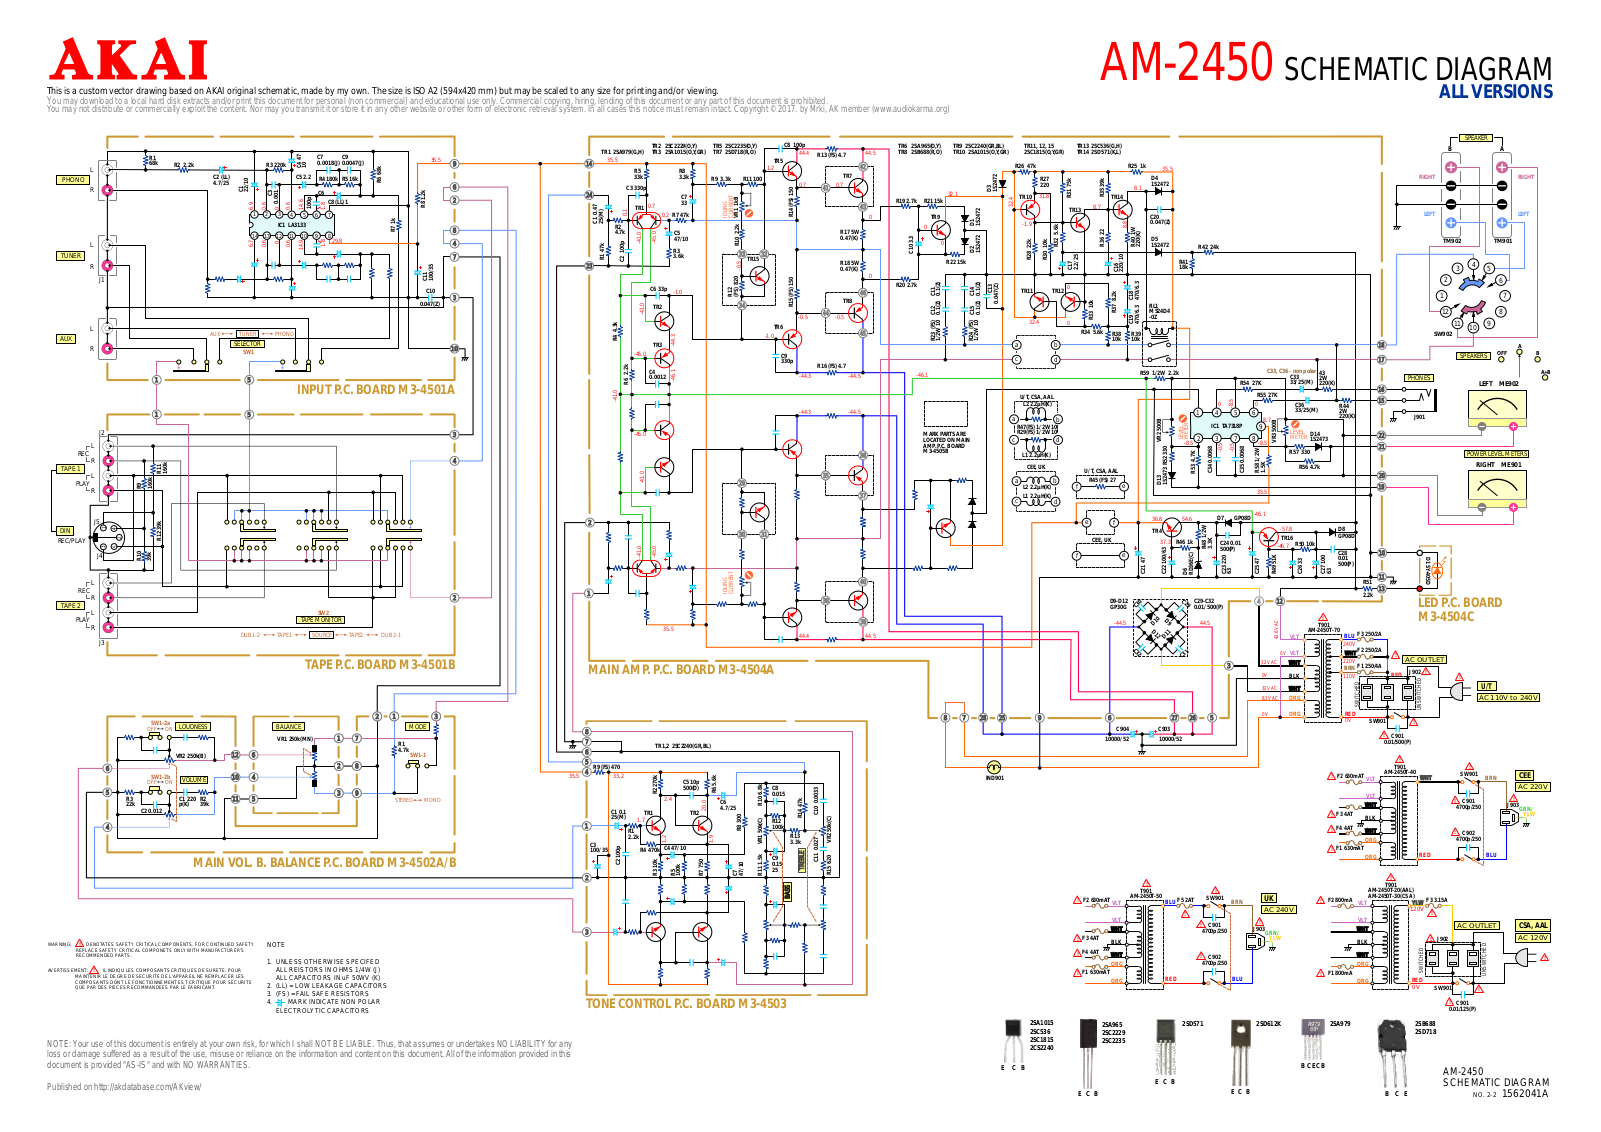 Akai AM-2450 Schematic